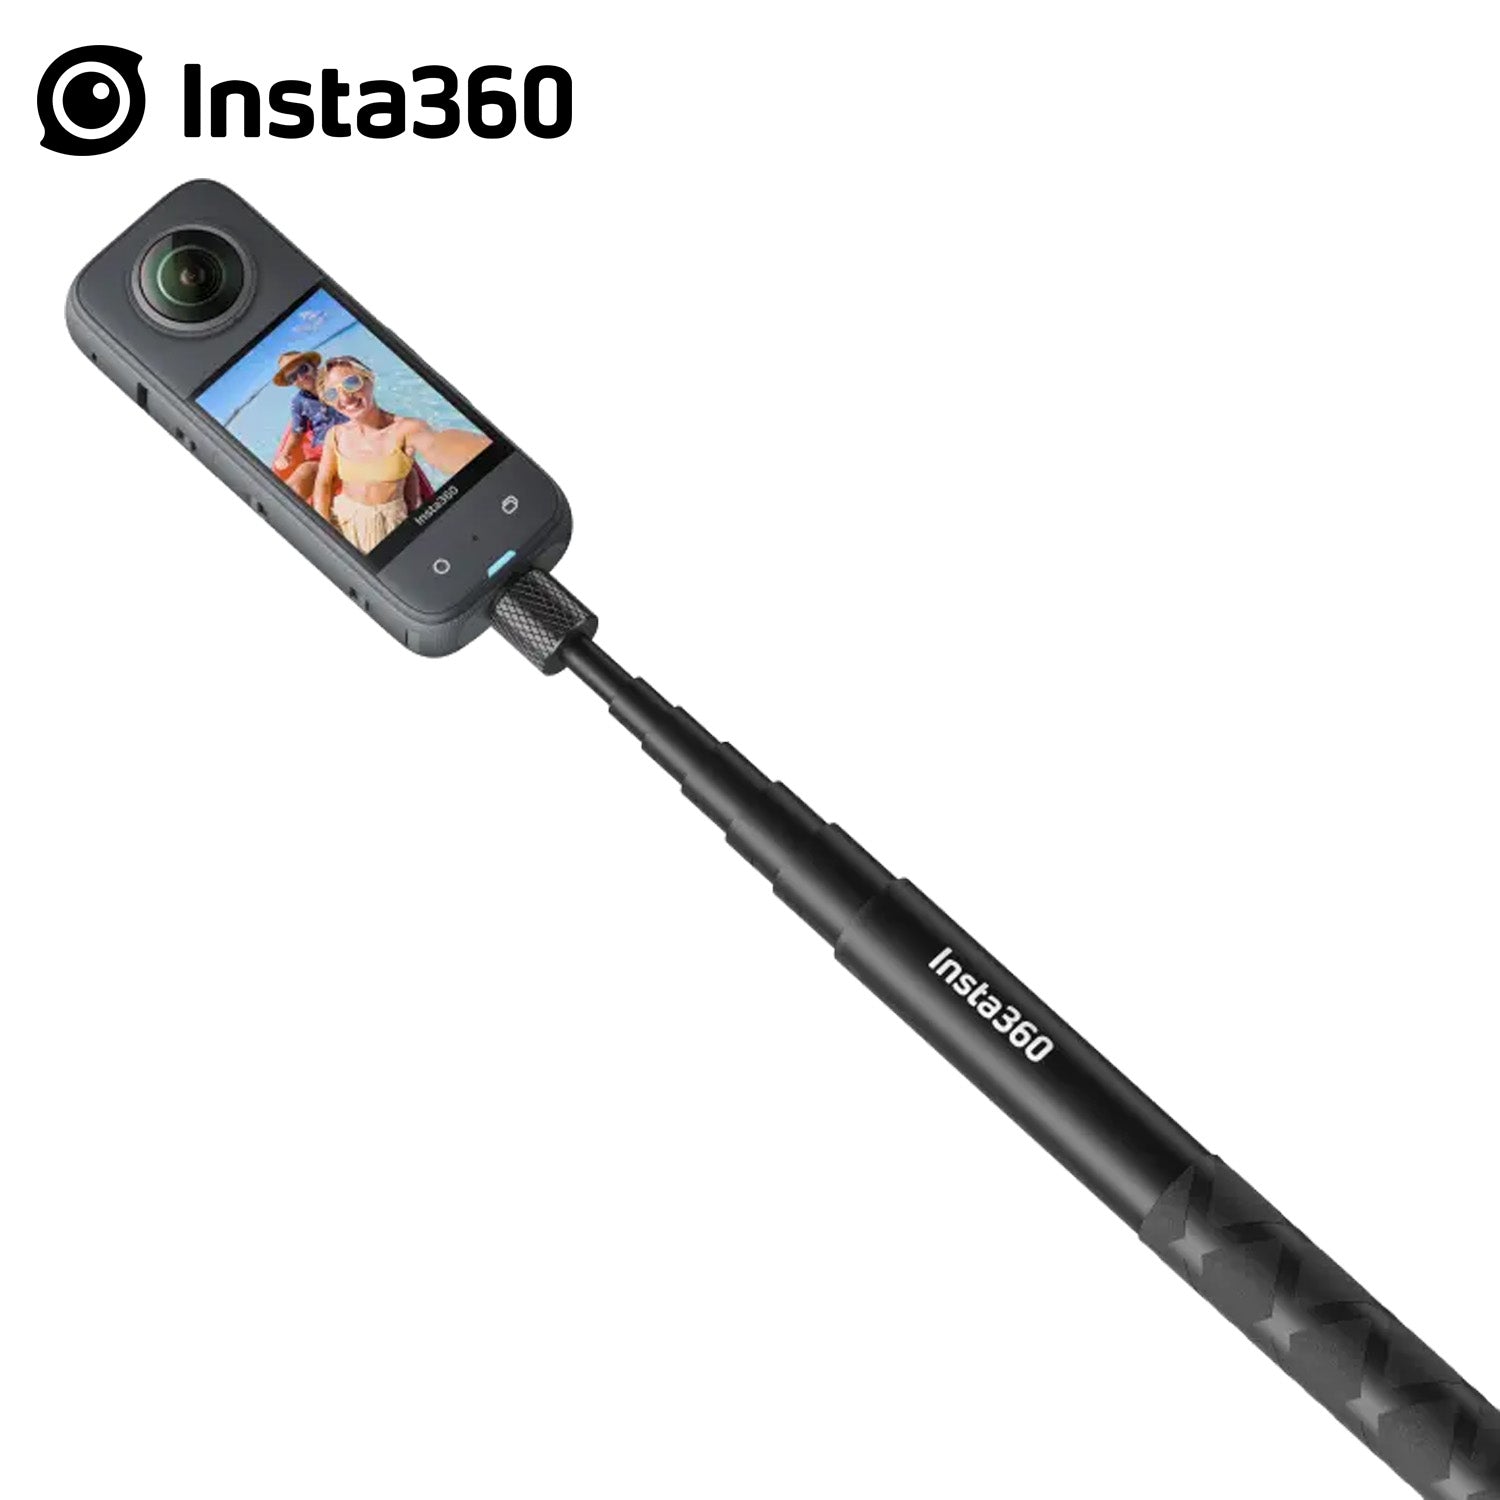 Insta360 114cm Invisible Selfie Stick - Black – Supreme Bikes PH